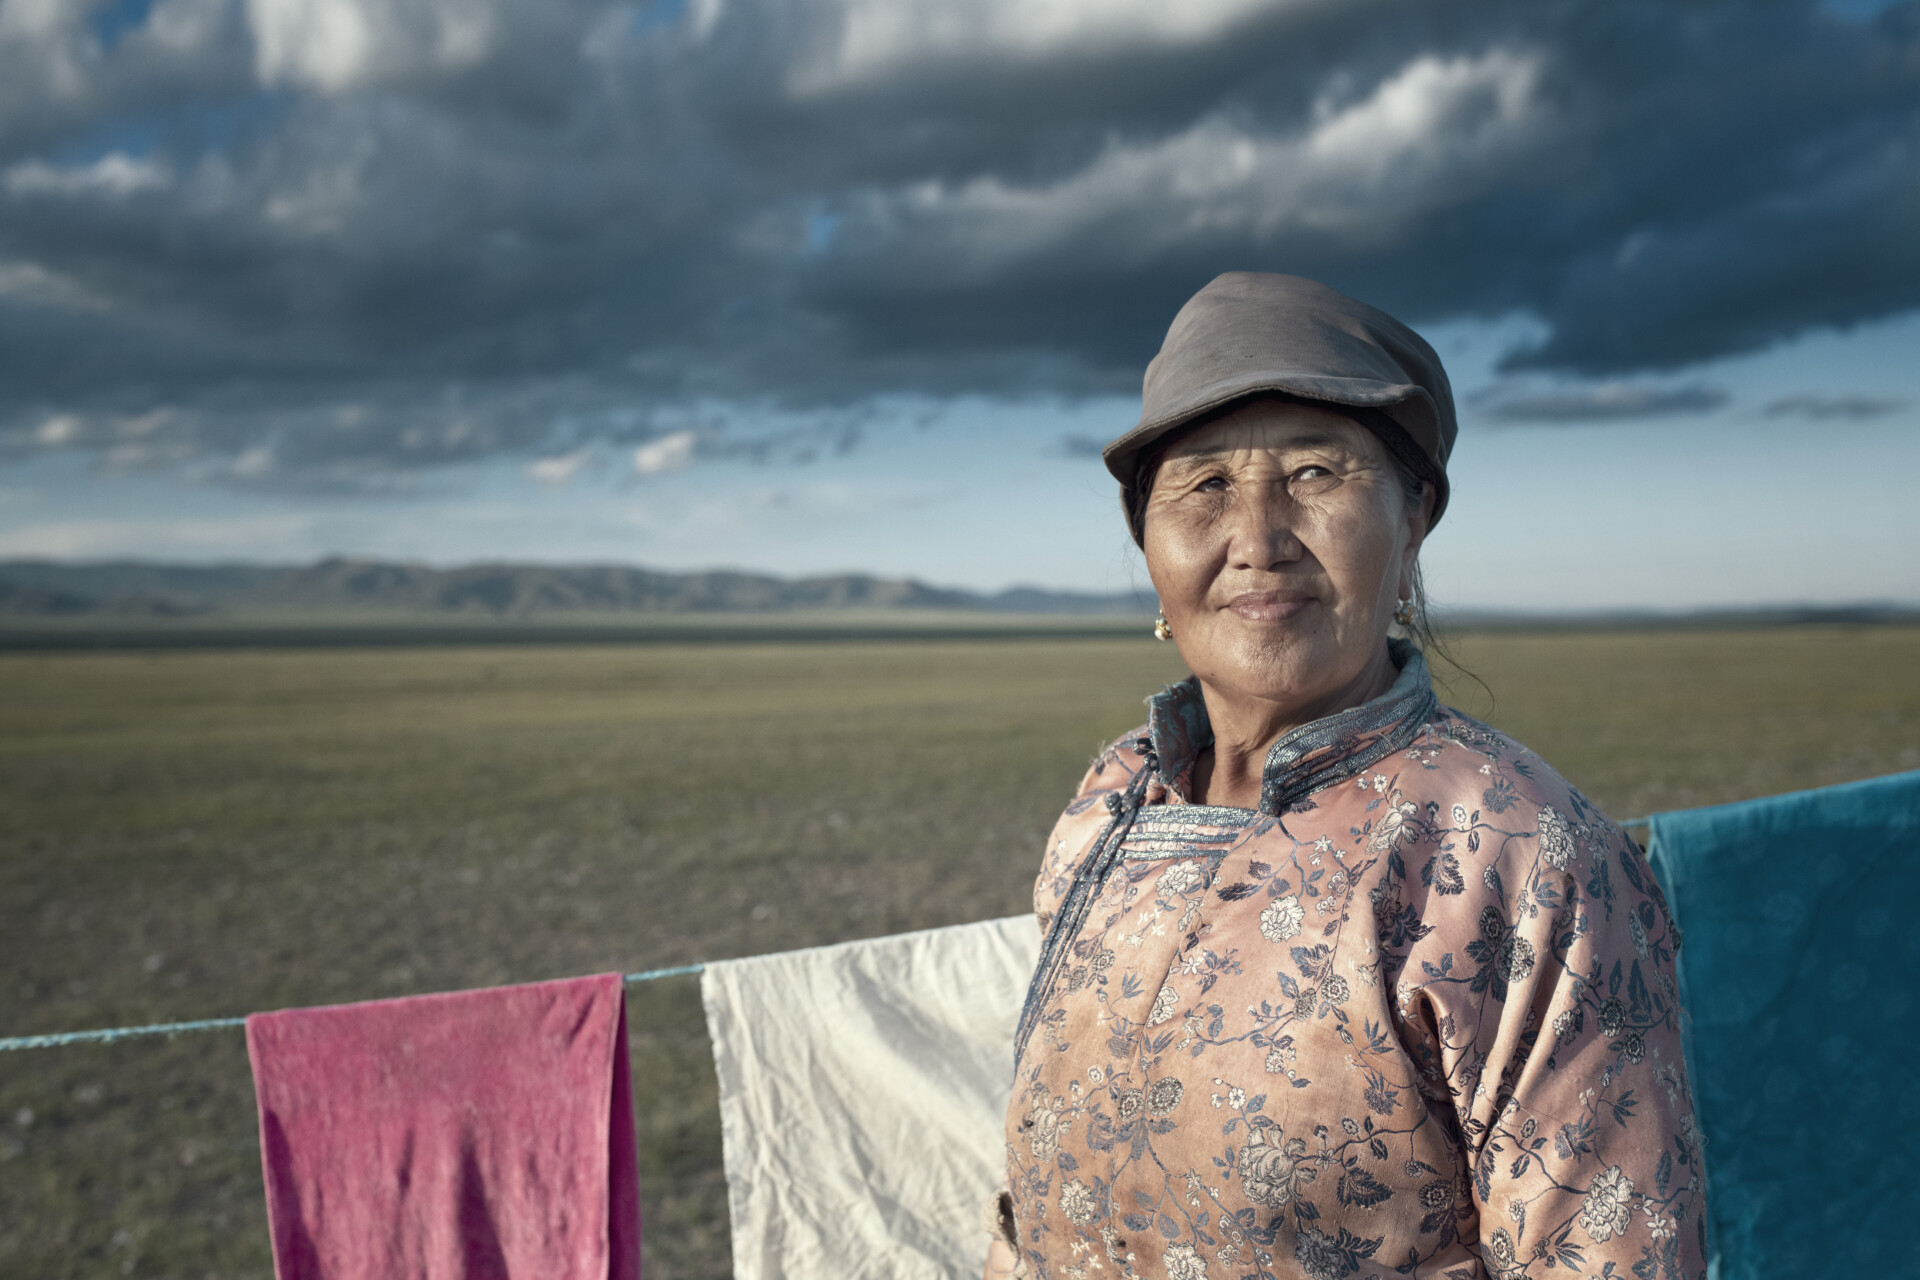 Mongolie 3 Shantsaa Overleven, hét boek dat je moet lezen over de klimaatcrisis: 'We hebben de natuur jarenlang misbruikt en uitgebuit, en nu slaat ze keihard terug'